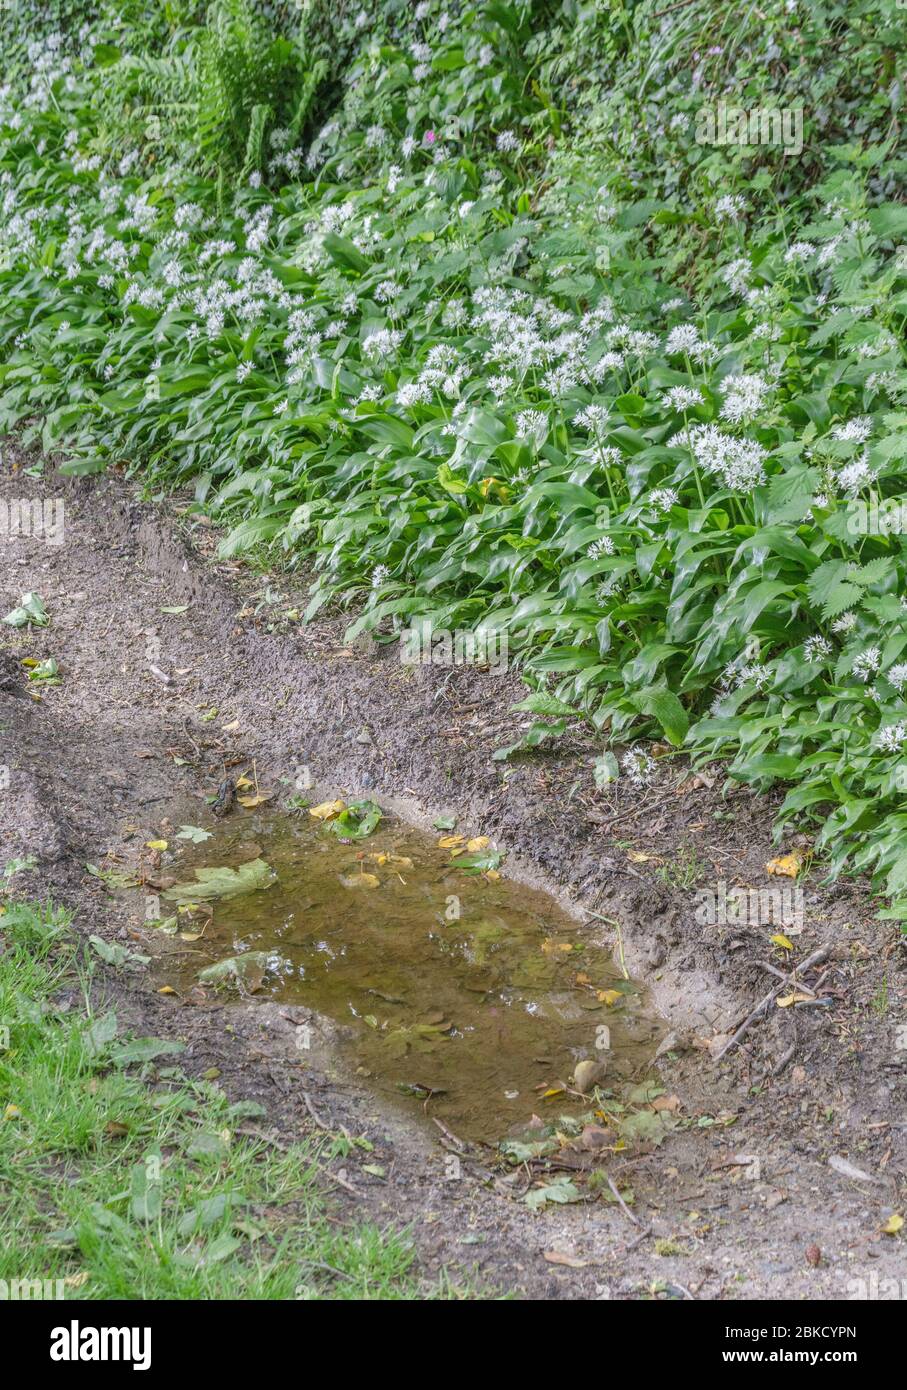 Feuilles et fleurs blanches de Ramsons, ail sauvage / Allium ursinum croissant dans une ruelle tranquille - une plante sauvage comestible et ancienne médicinale. Banque D'Images